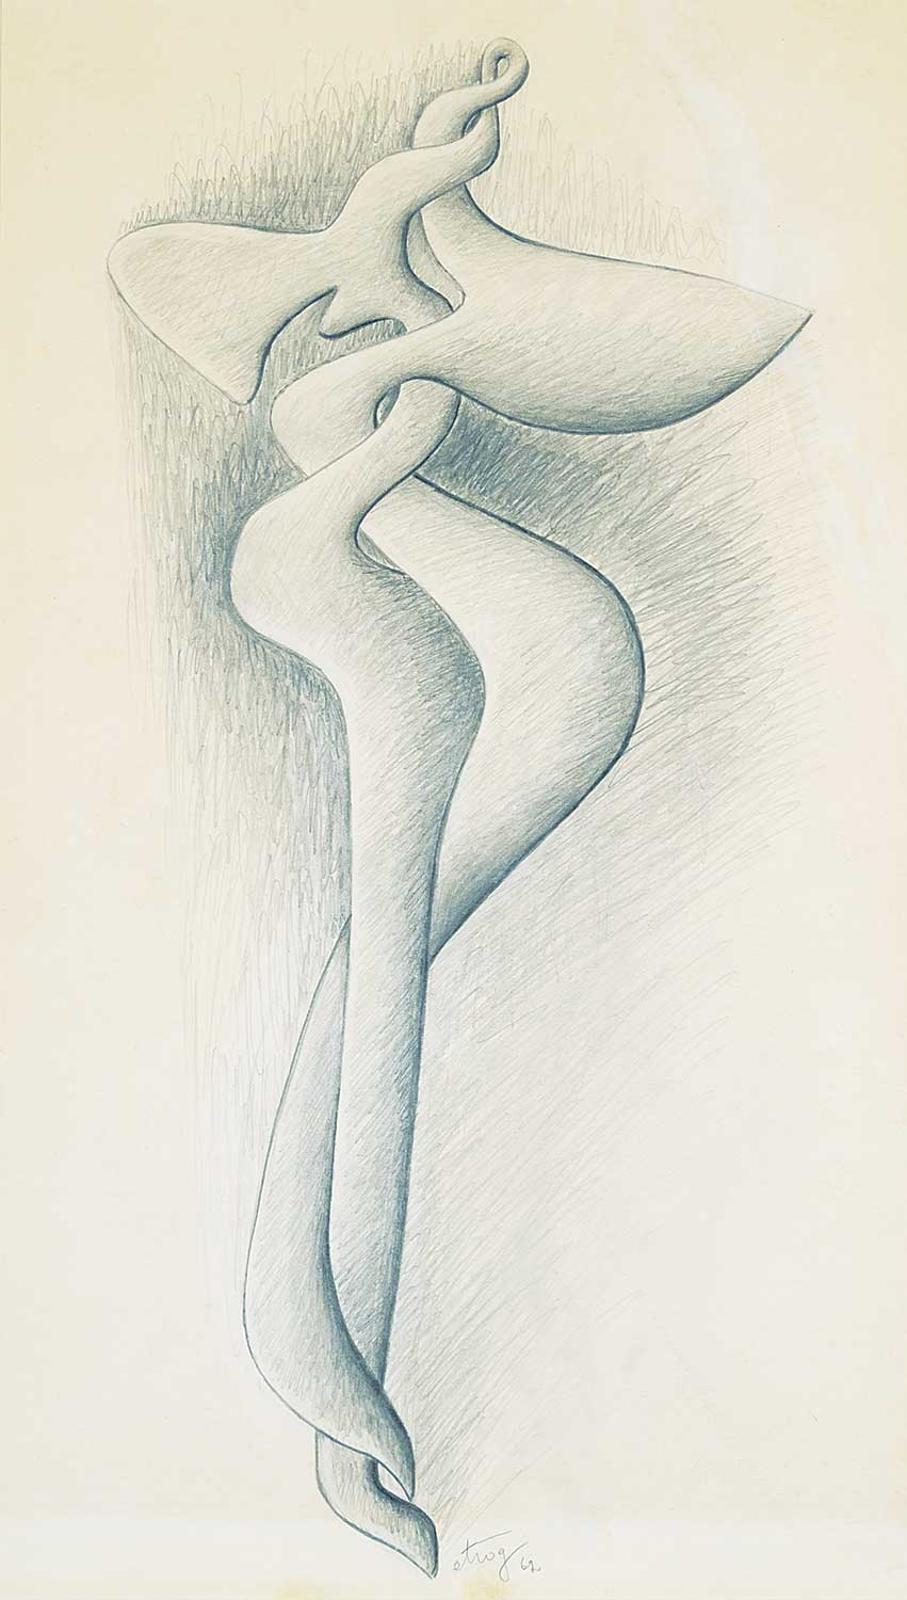 Sorel Etrog (1933-2014) - Untitled - Sculpture Drawing